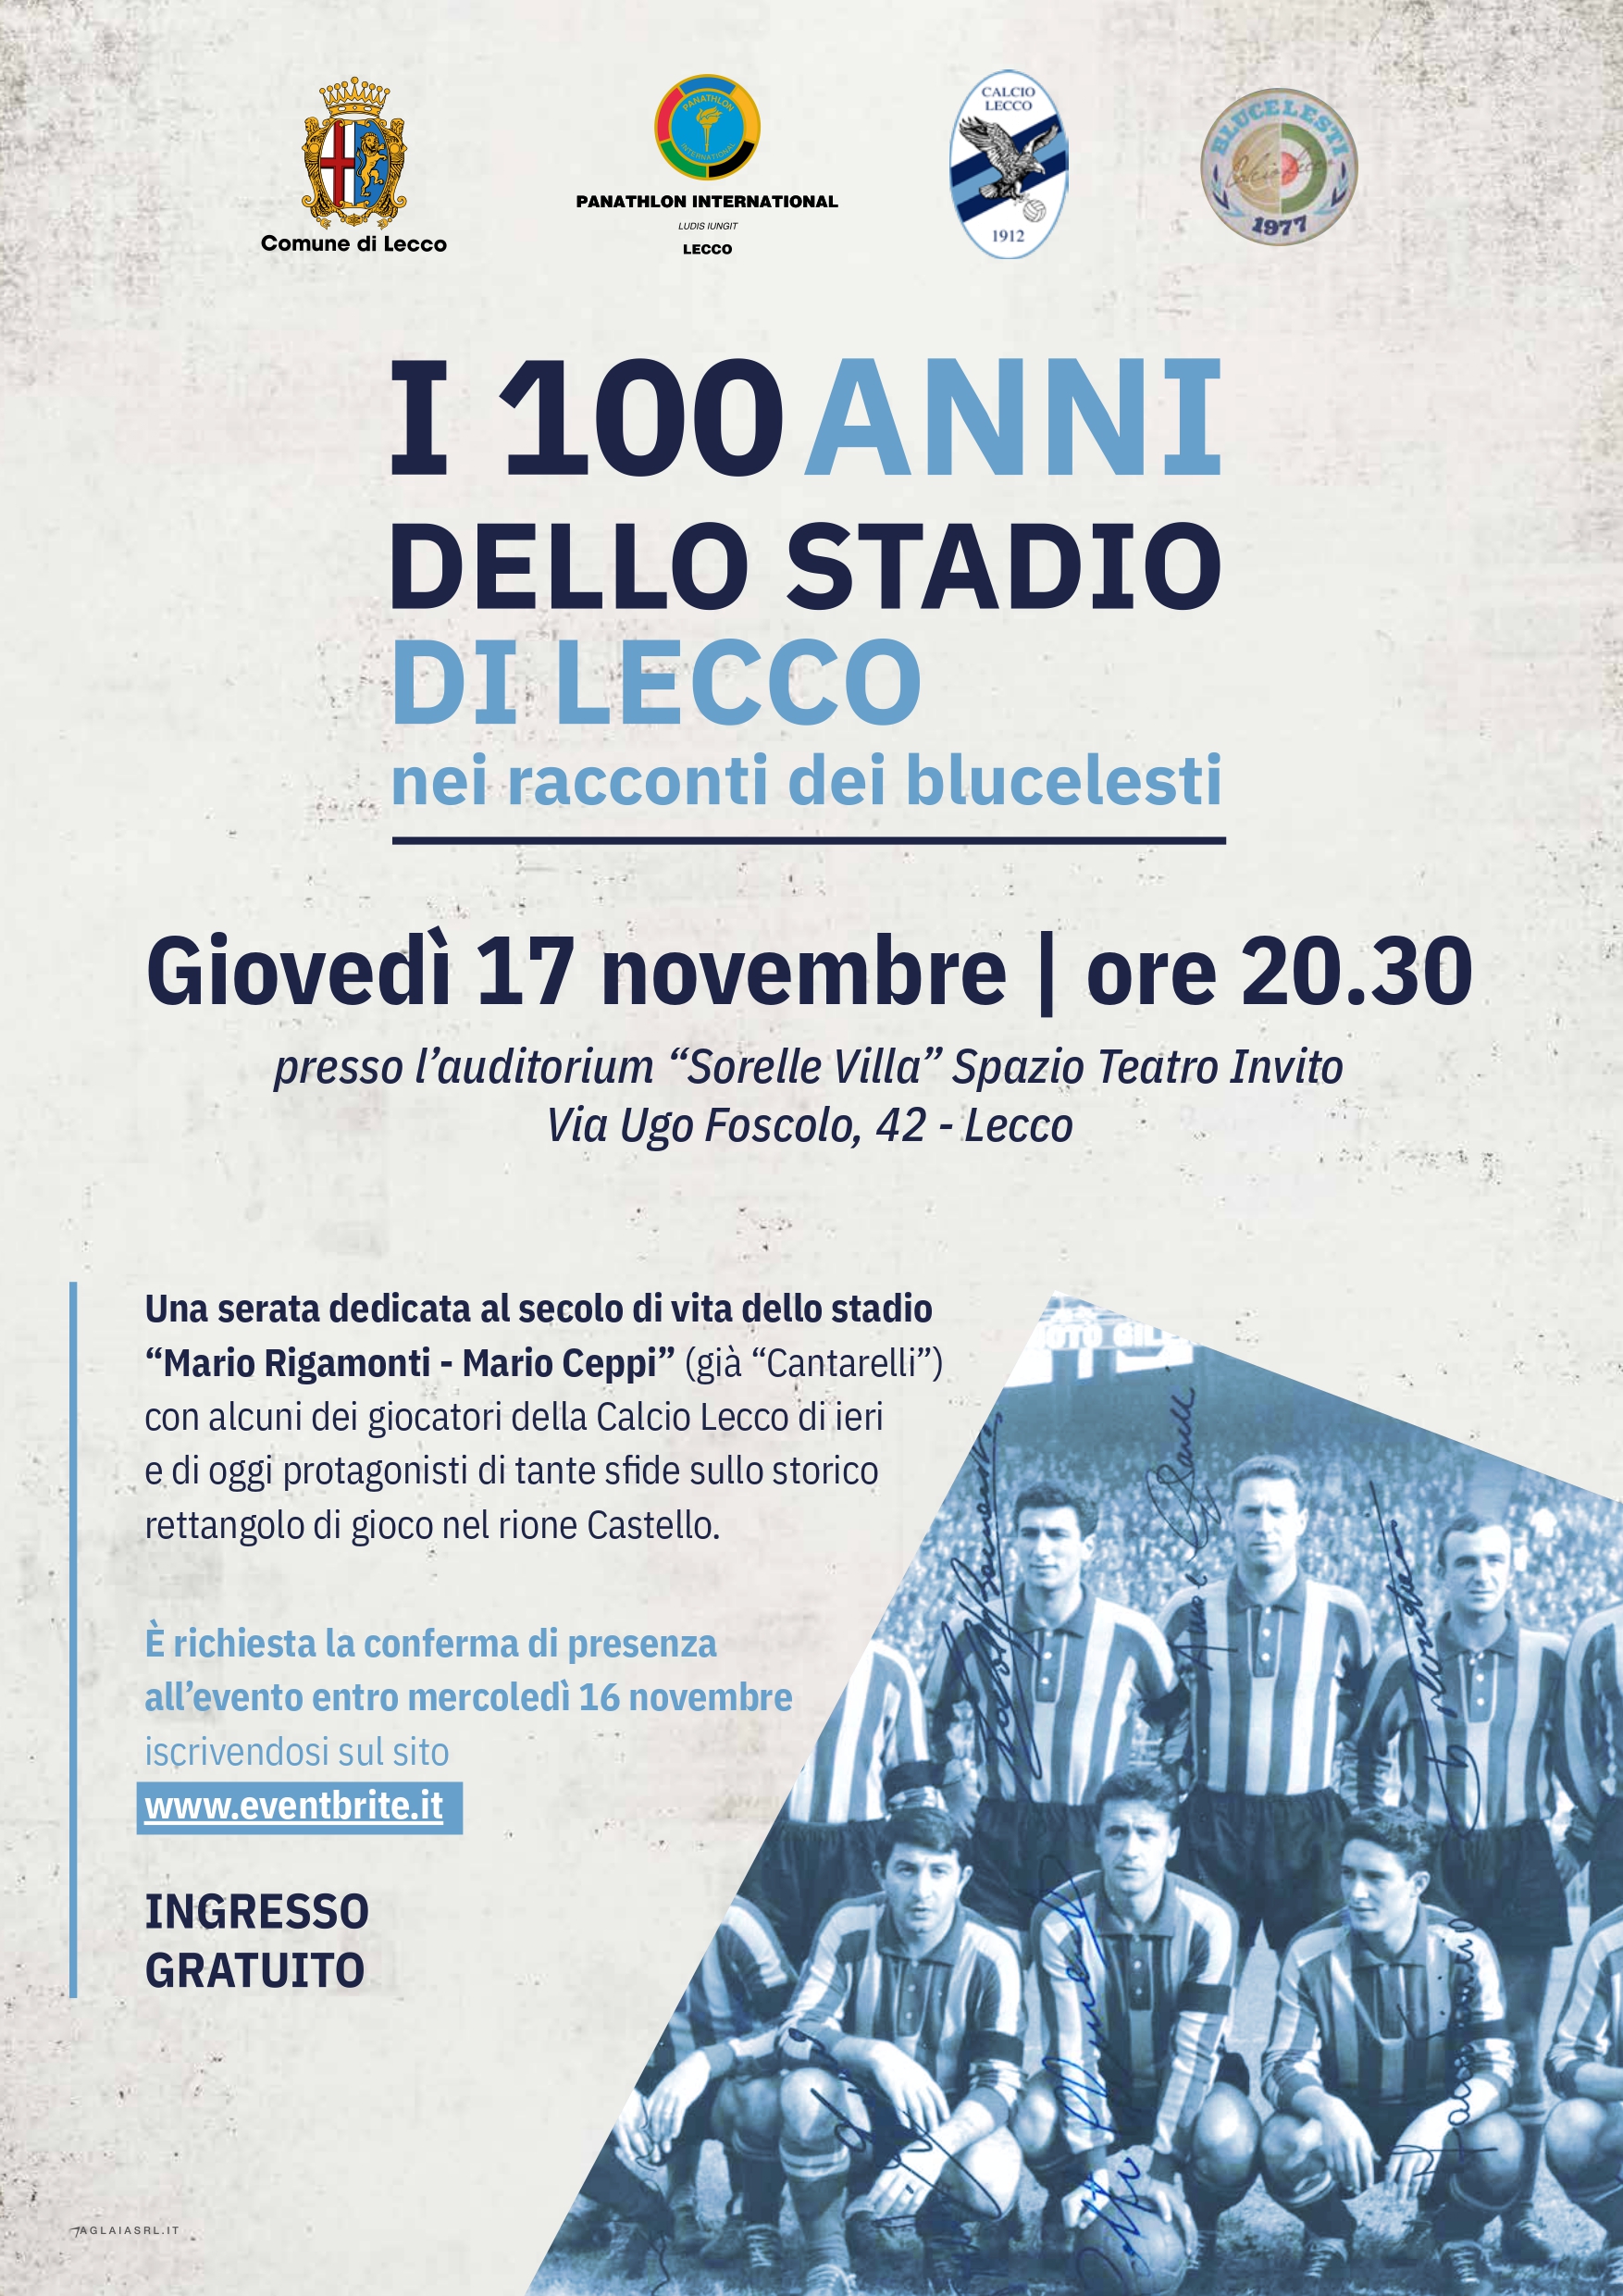 locandina con tutte le informazioni dell'evento di giovedì 17 novembre per i 100 anni dello stadio di Lecco